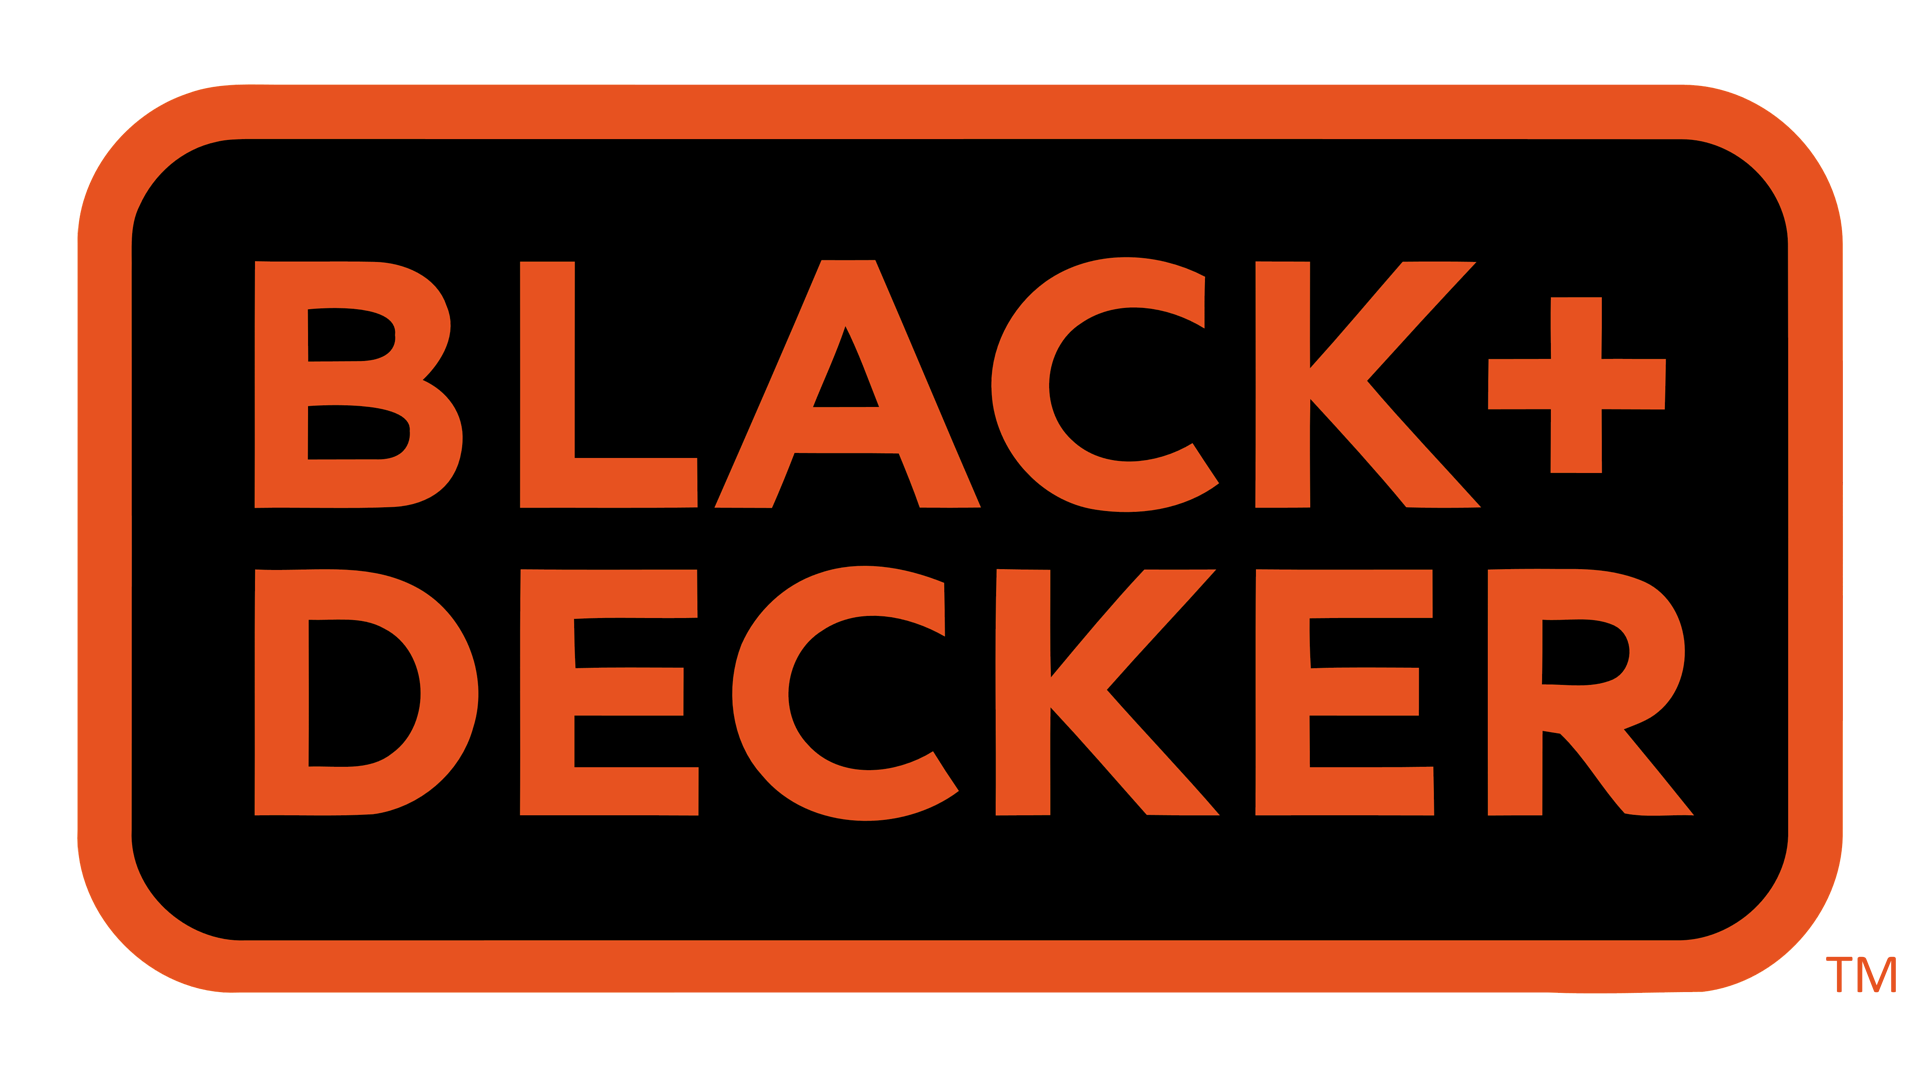 https://1000logos.net/wp-content/uploads/2017/12/Black-Decker-Logo.png